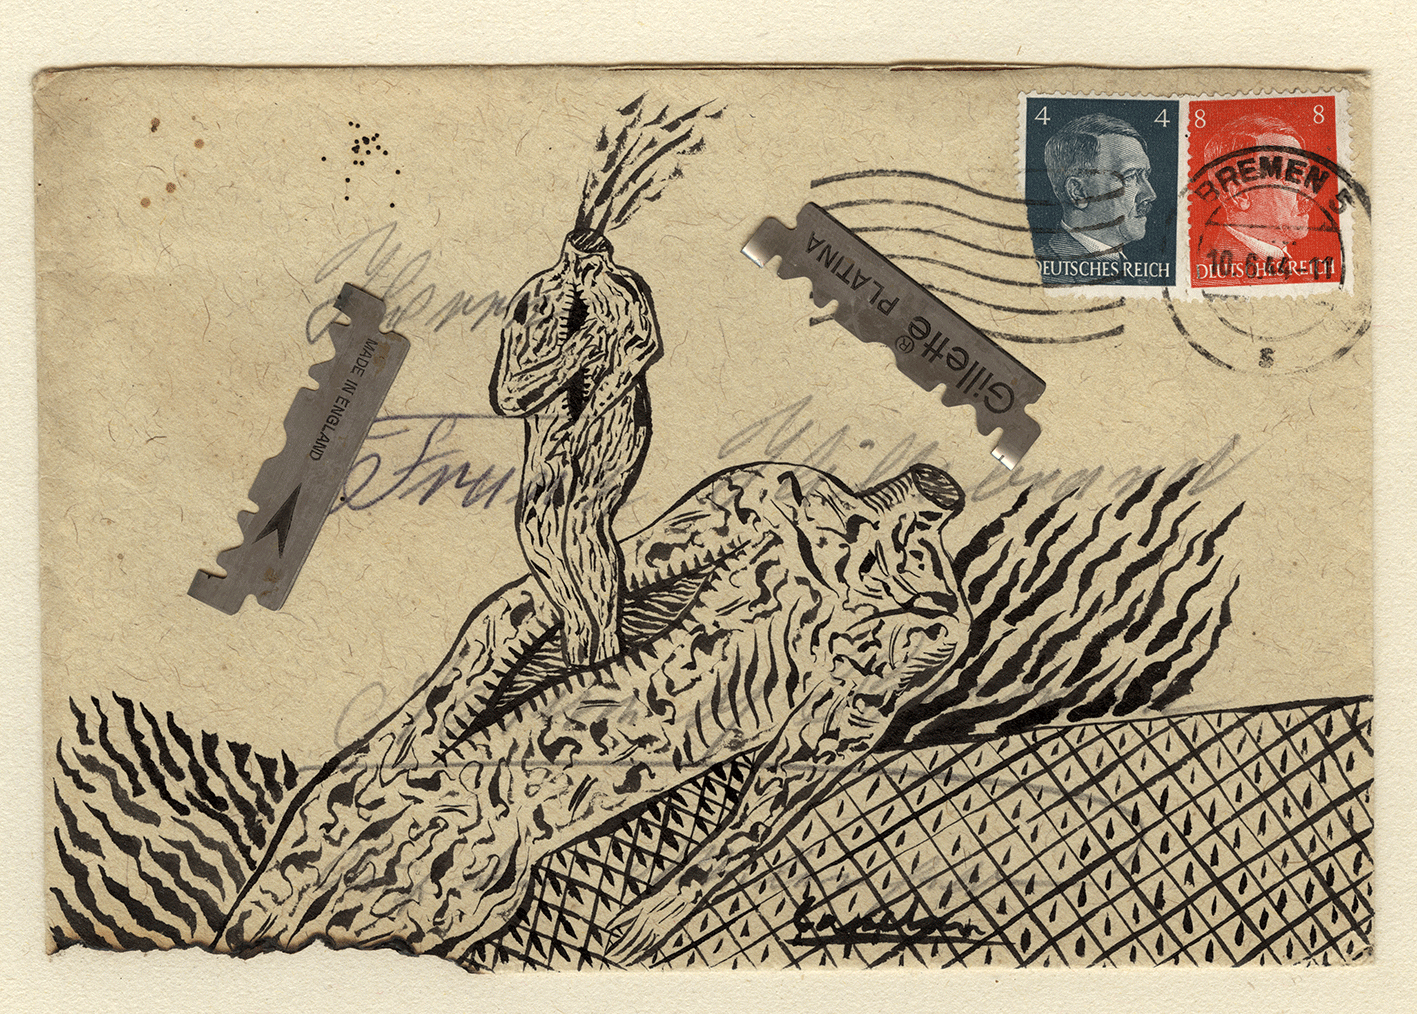 1986 ink and razor blades on burned envelope, 11 x 16 cm